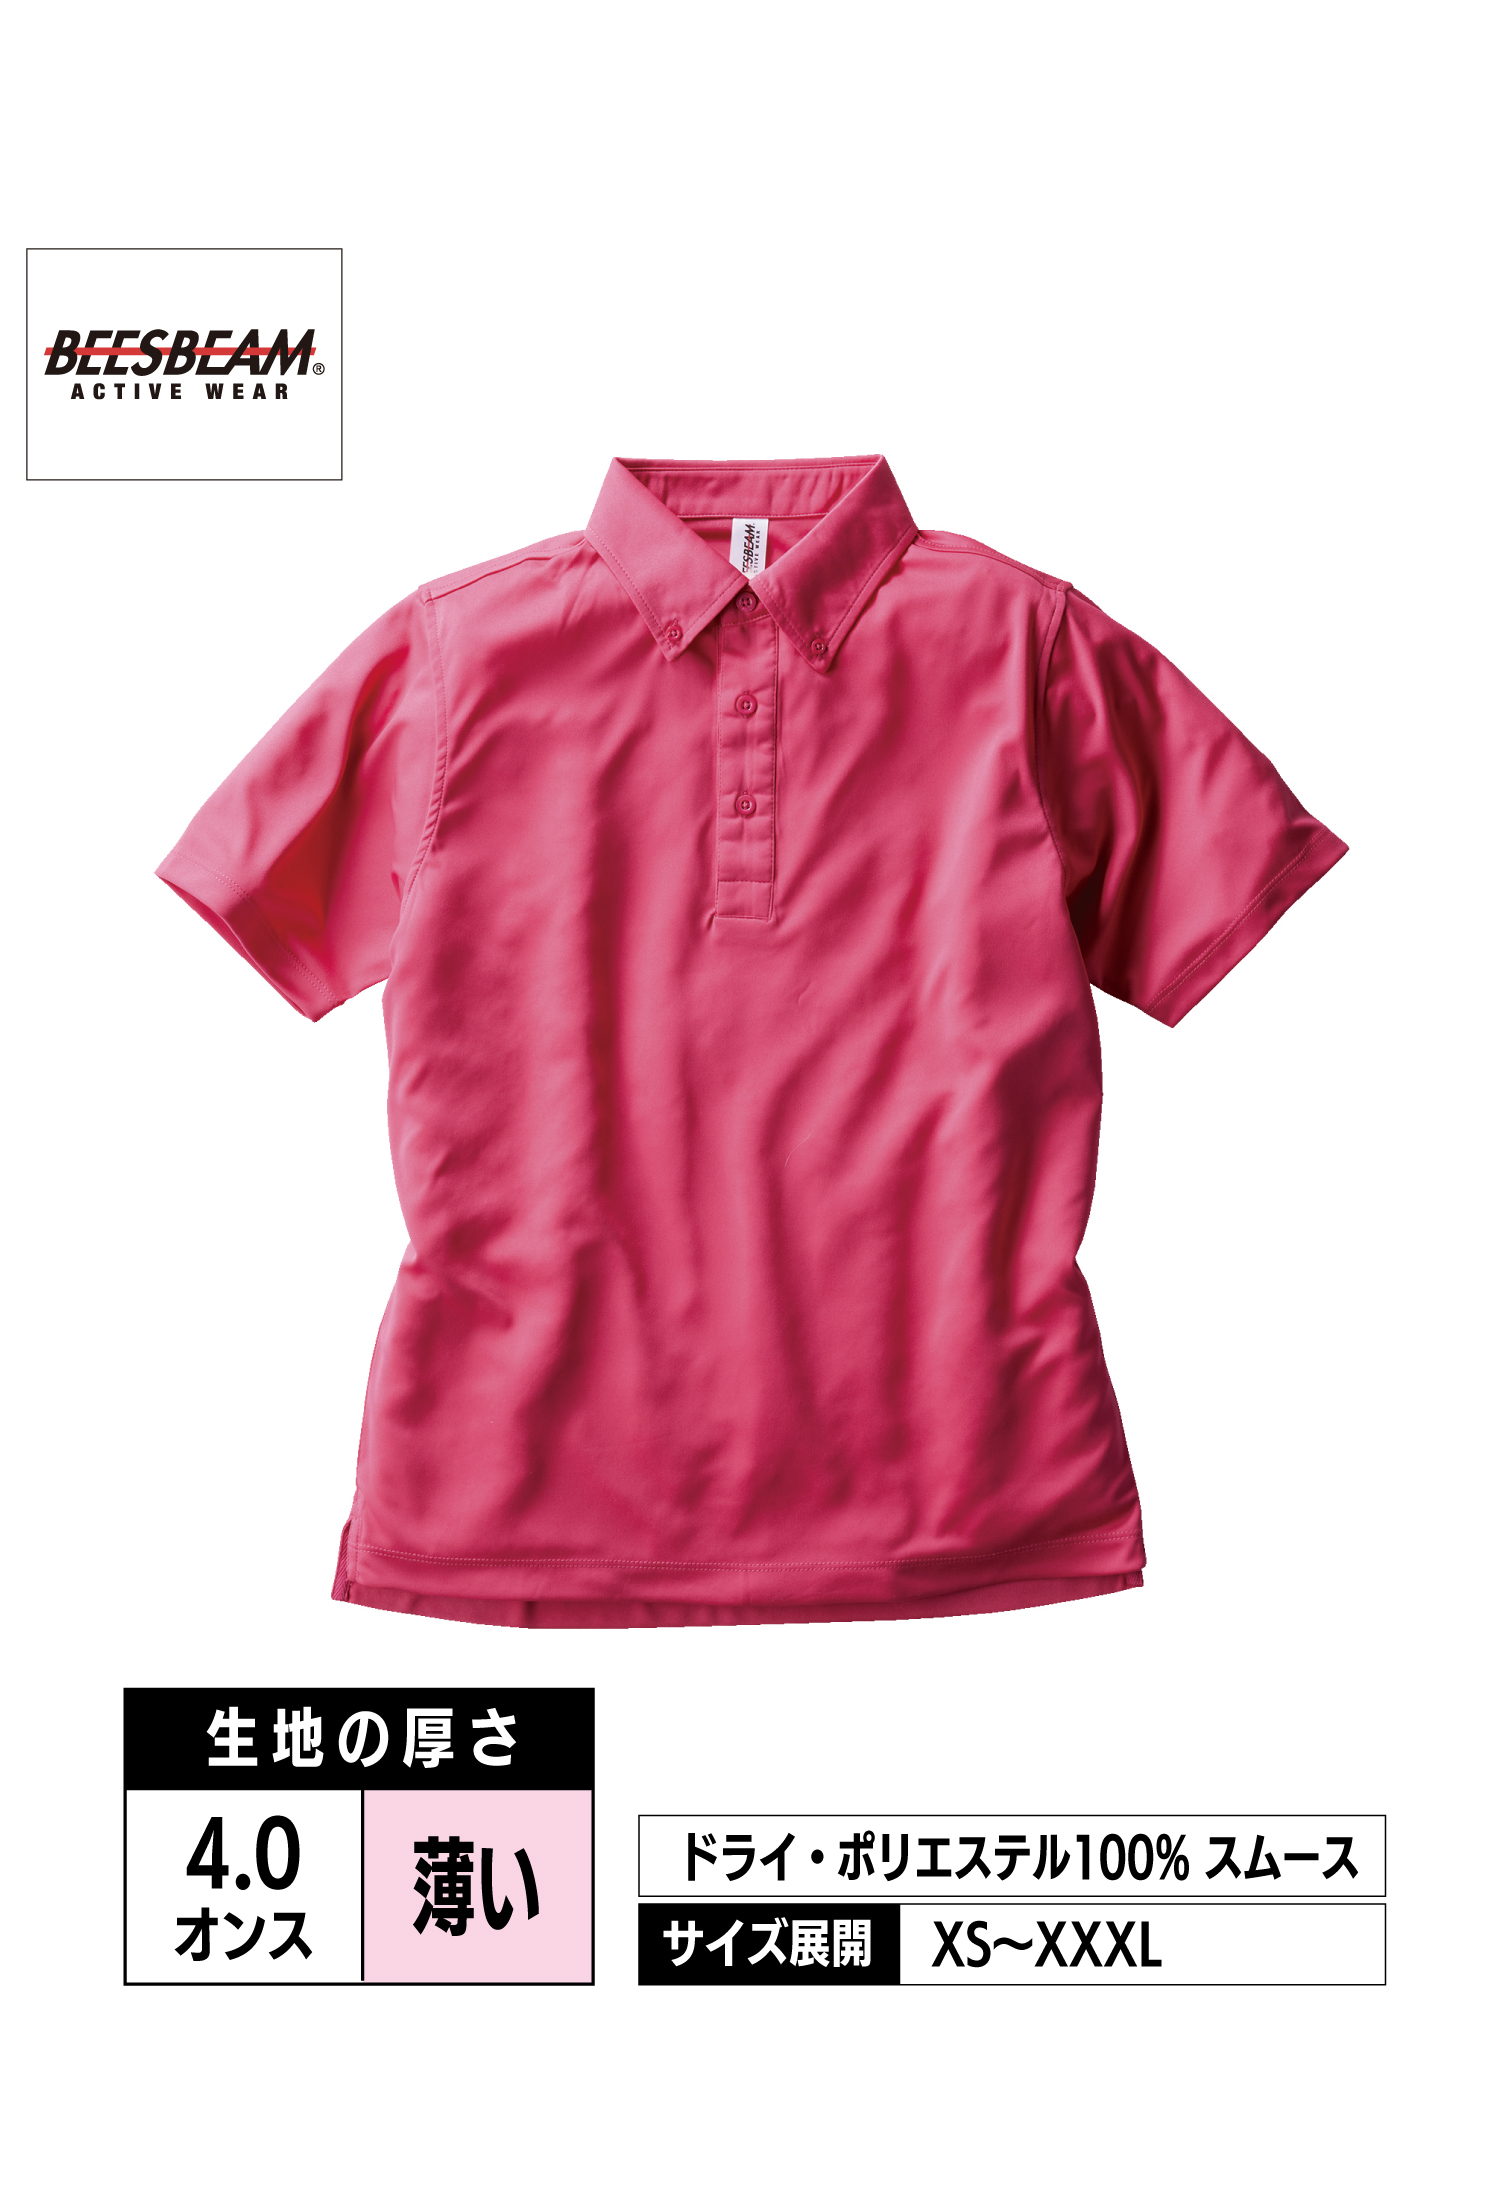 FDB-270｜ファンクショナル ドライBDポロシャツ【全8色】BEESBEAM